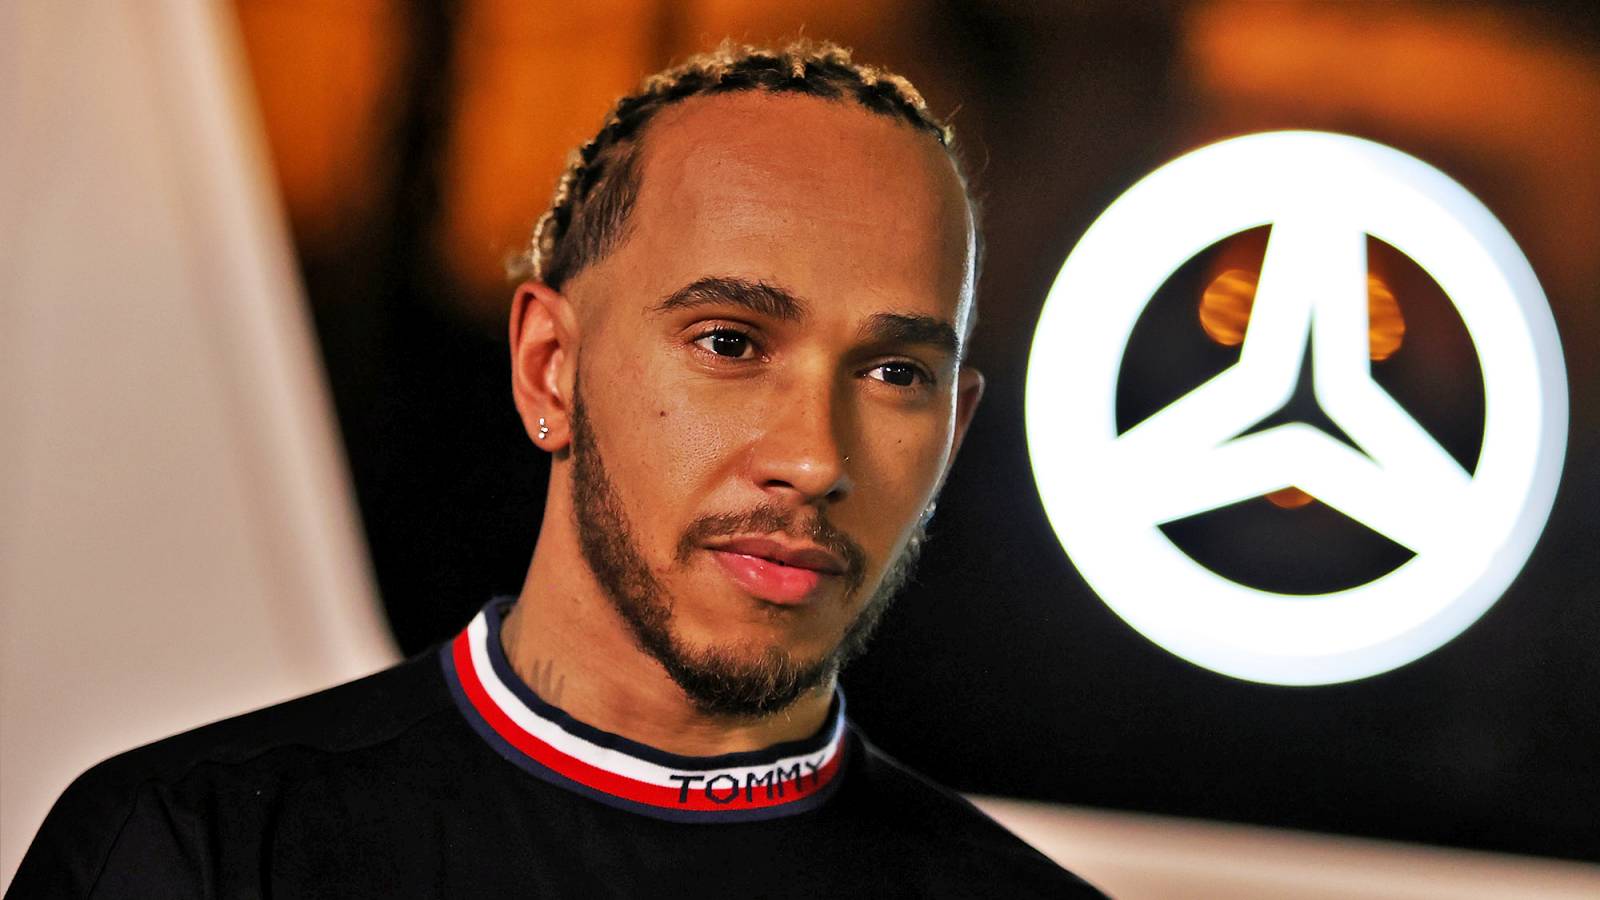 Formel 1 Lewis Hamilton imponerer fans Vigtig udtalelse